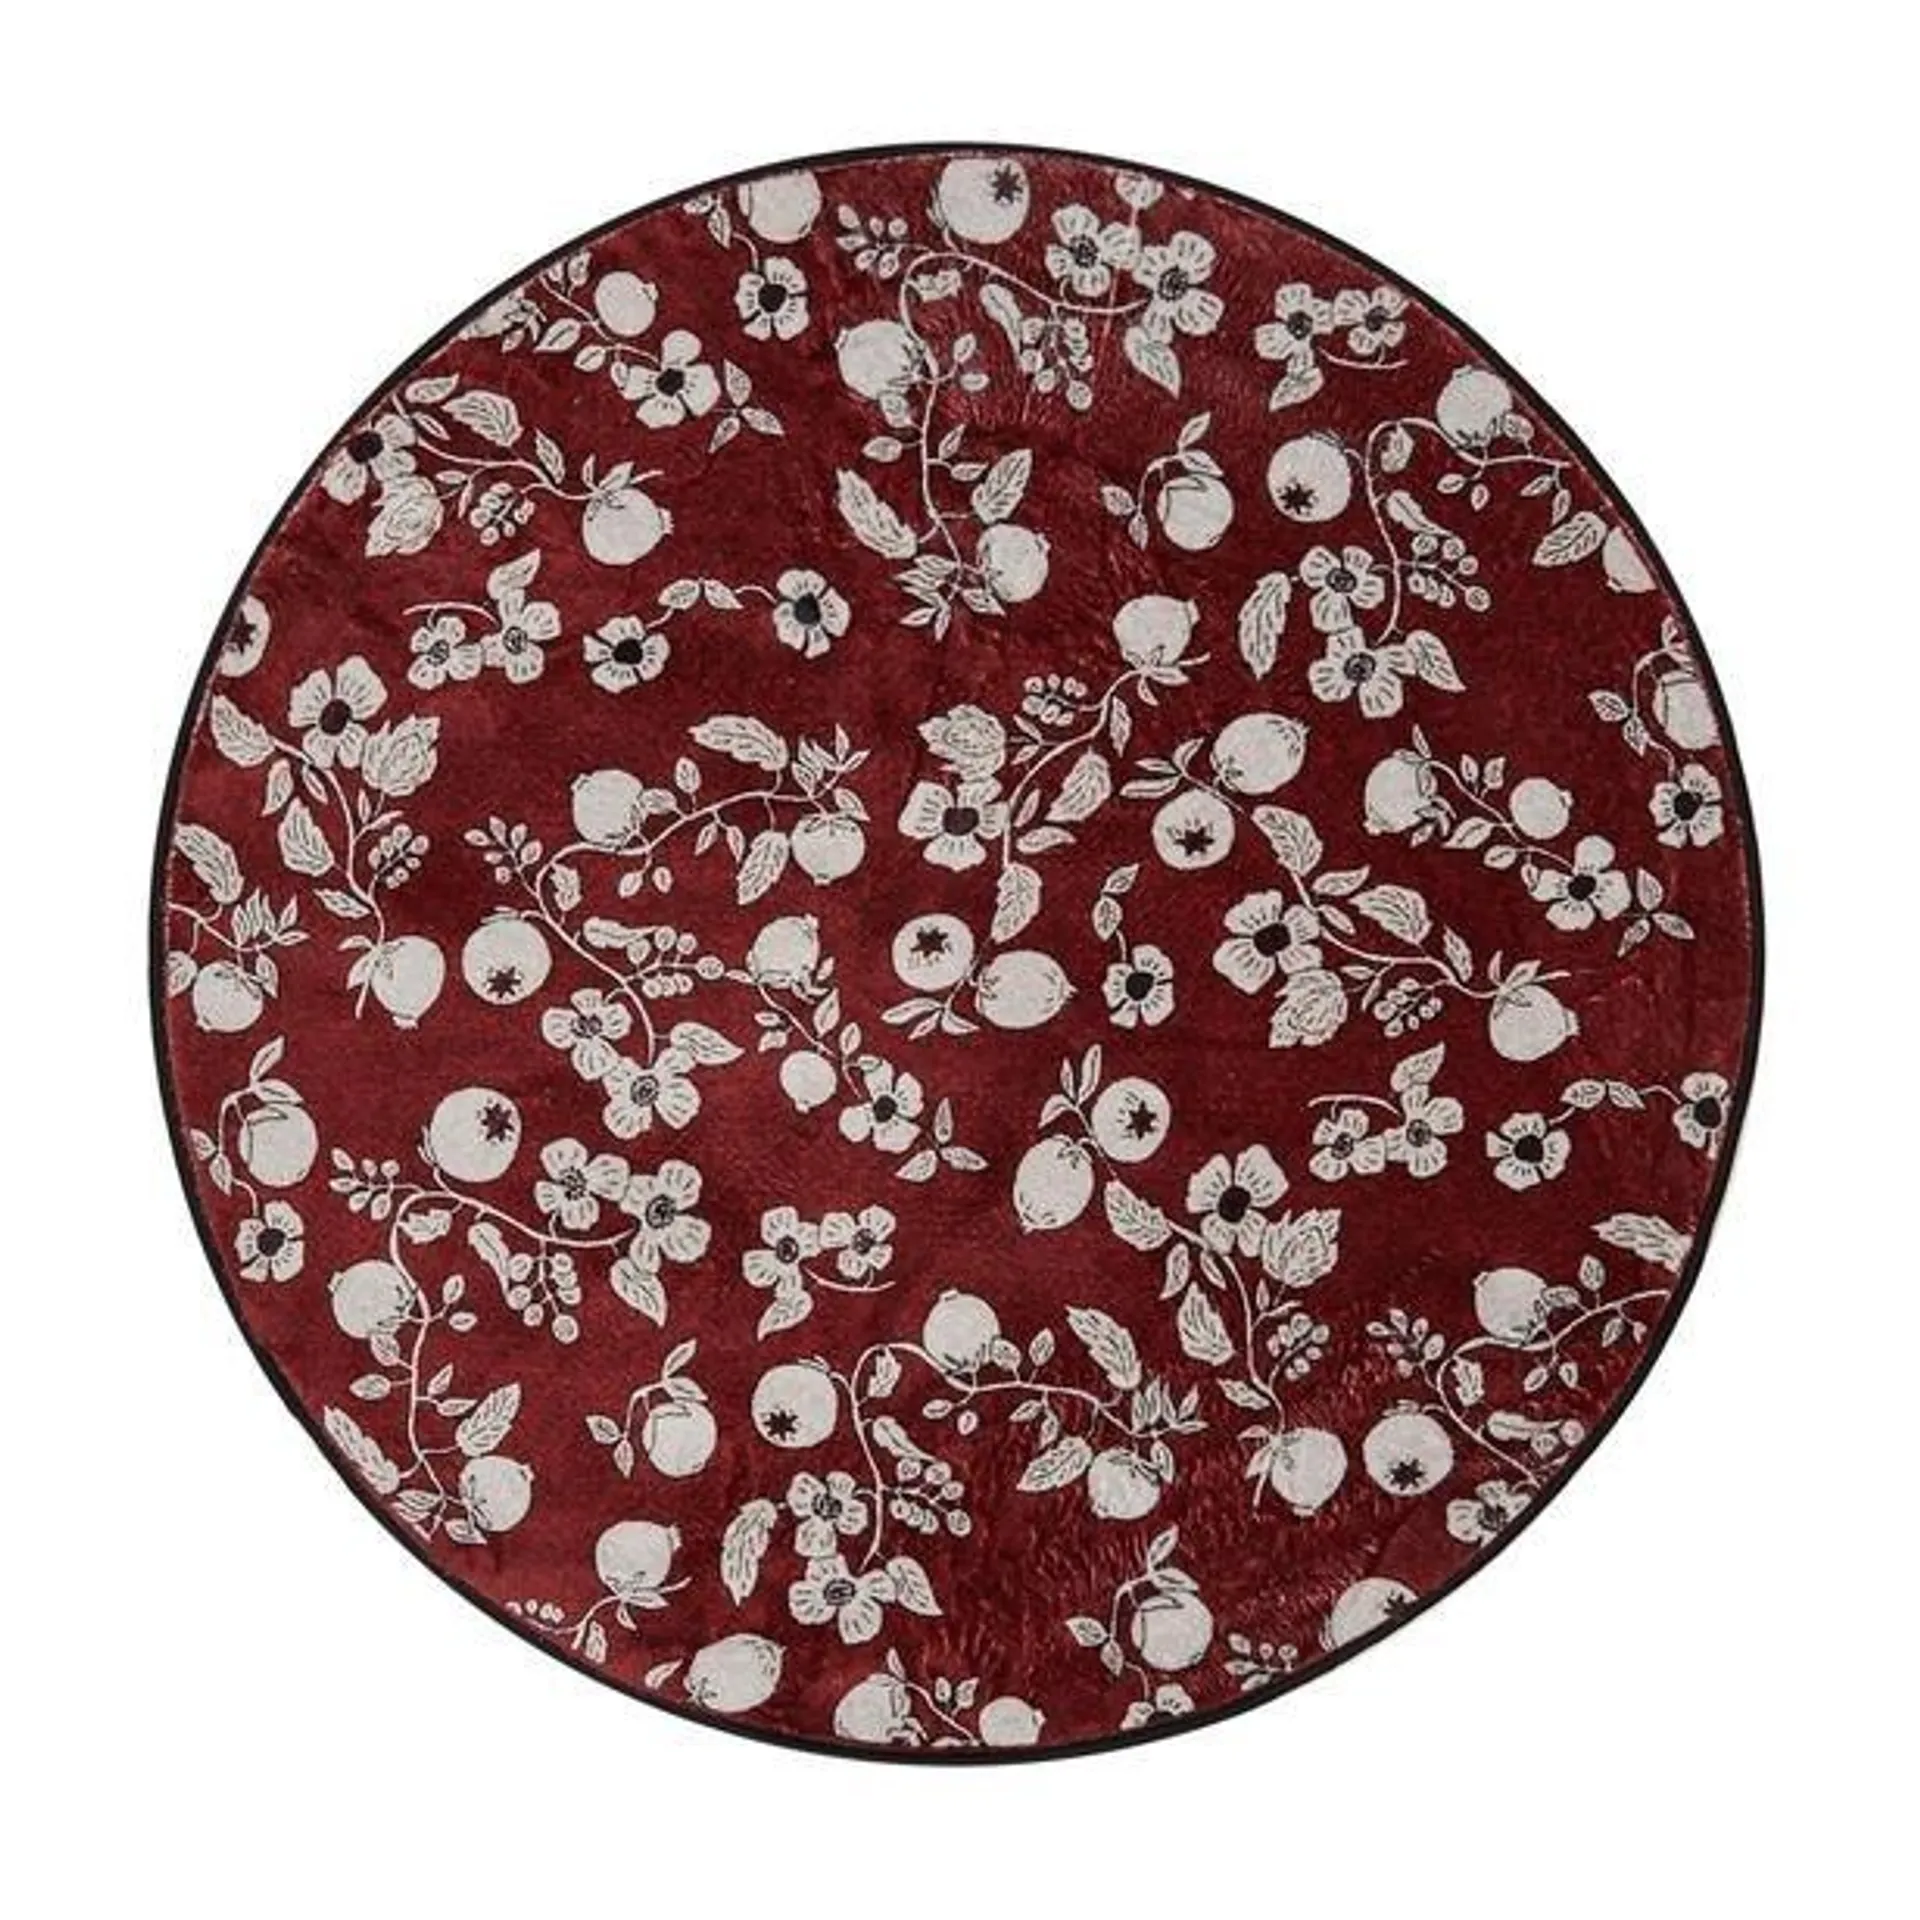 Nuvomon Çiçek Desenli Yuvarlak Halı - Kırmızı - 90x90 cm